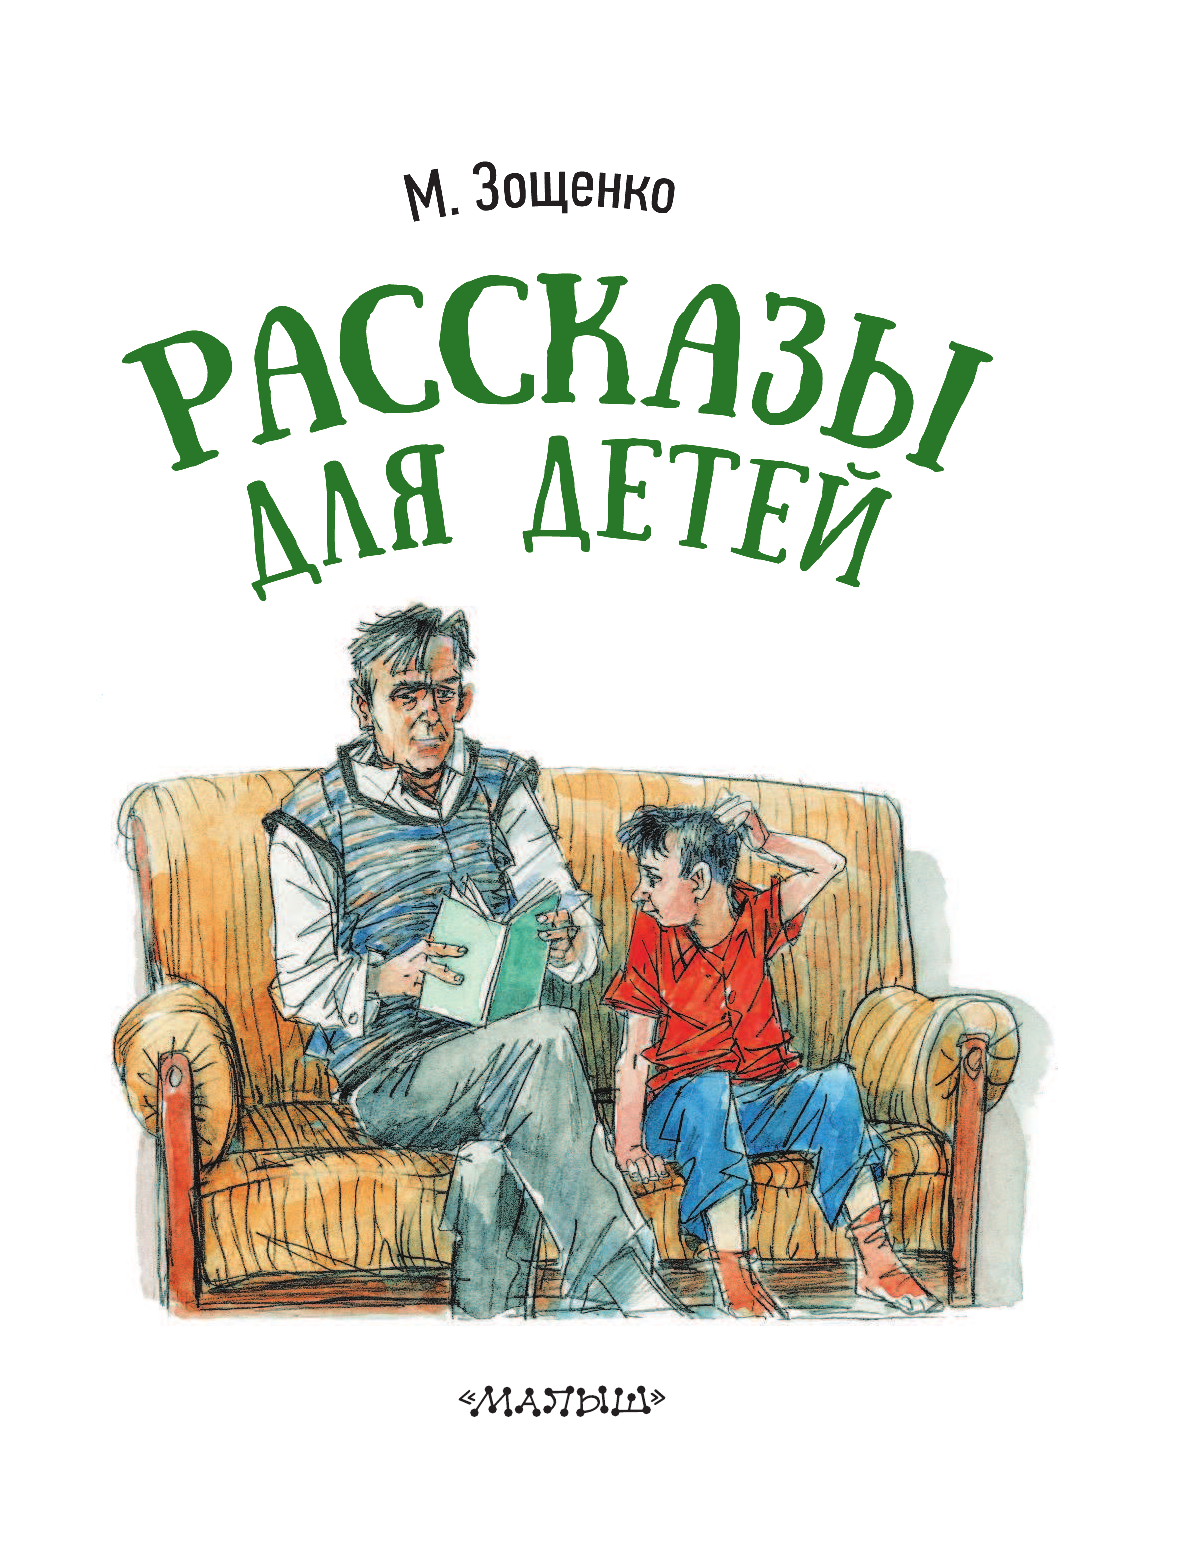 Иллюстрации к рассказам Зощенко для детей. Книга Зощенко рассказы для детей. Произведения зощенко учат